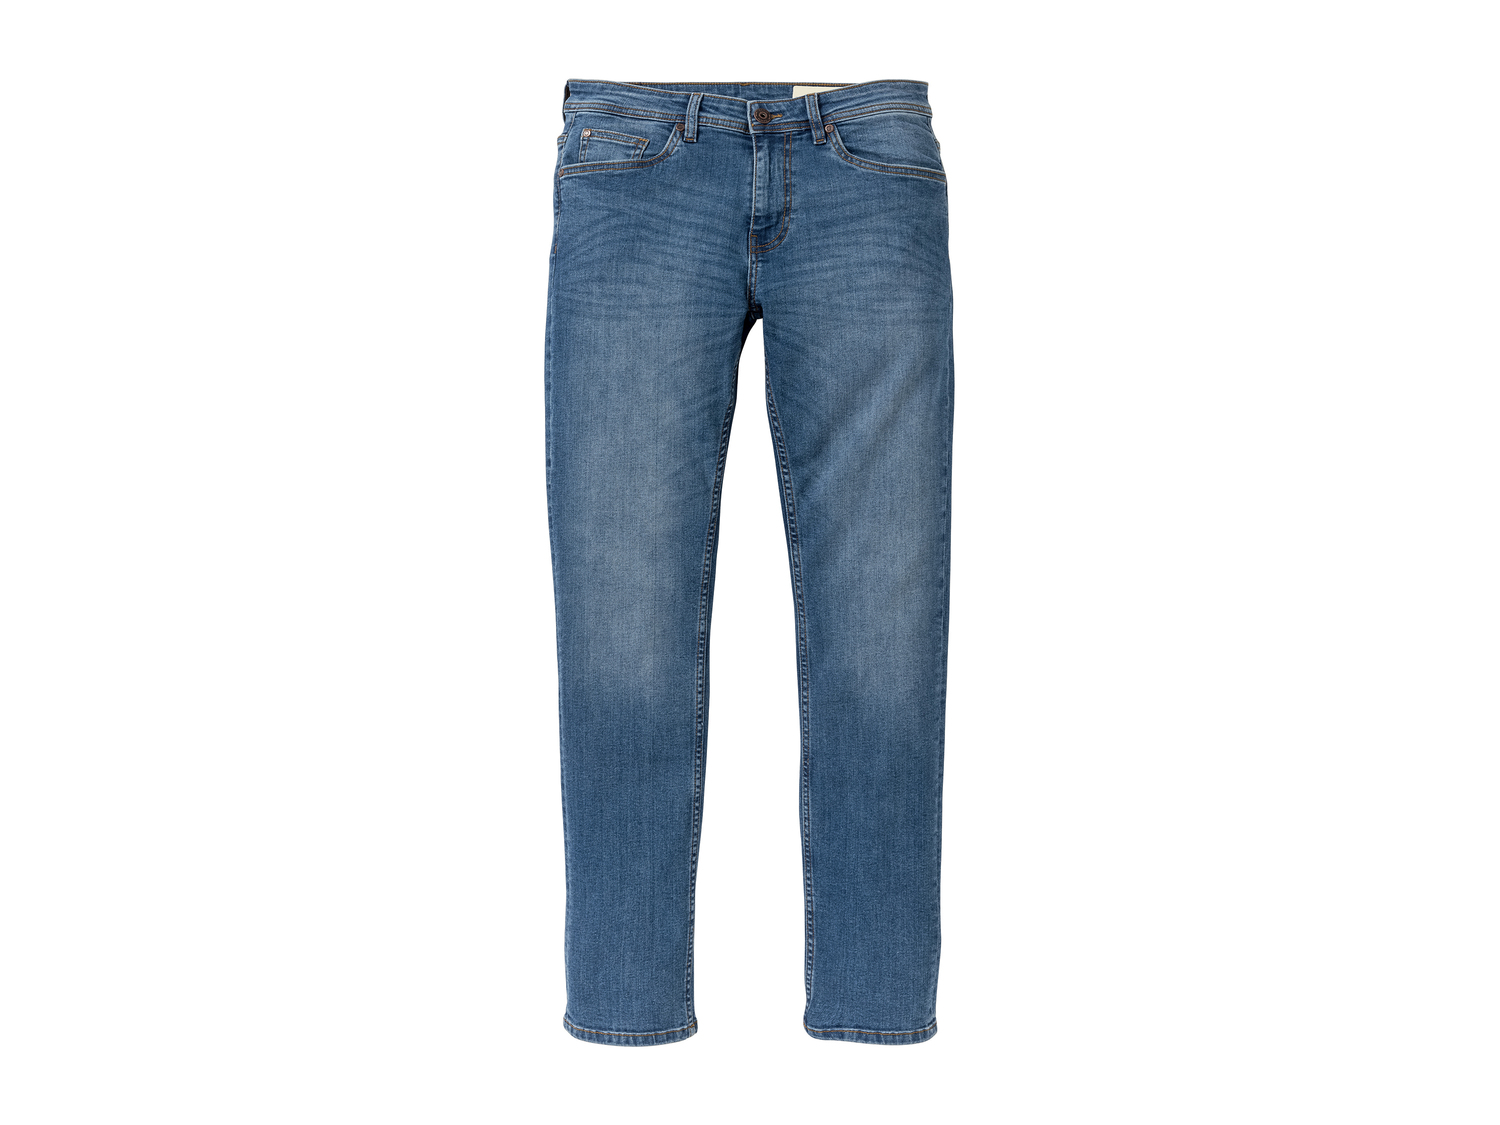 Jeans « slim fit » Livergy , le prix 11.99 € 
- Ex. 98 % coton et 2 % élasthanne ...